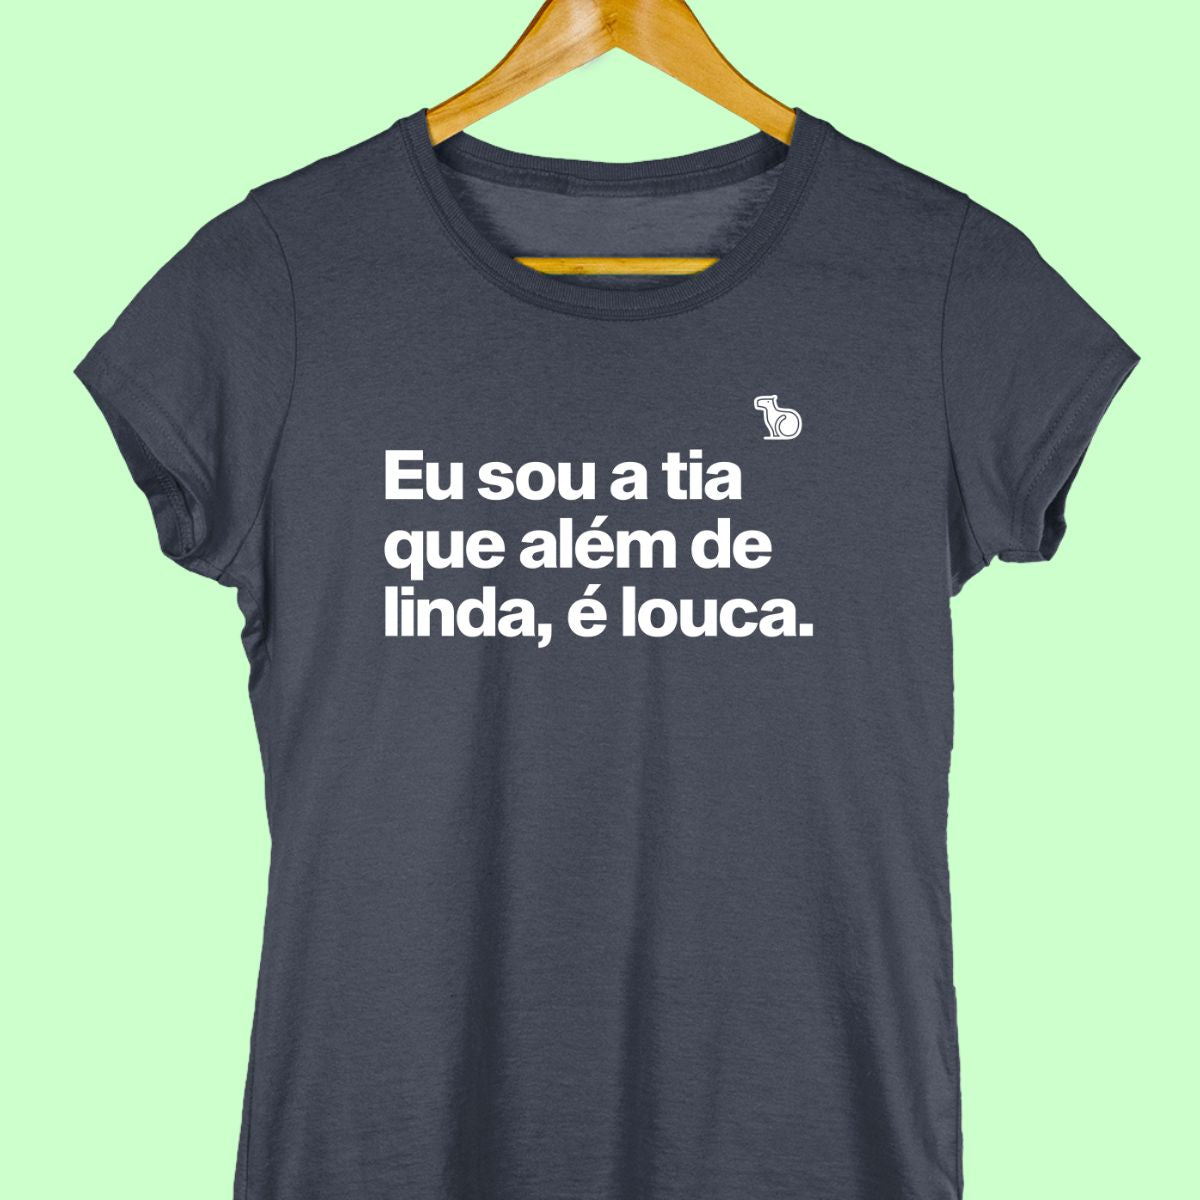 Camiseta com a frase "Eu sou a tia que além de linda, é louca." Feminina azul.